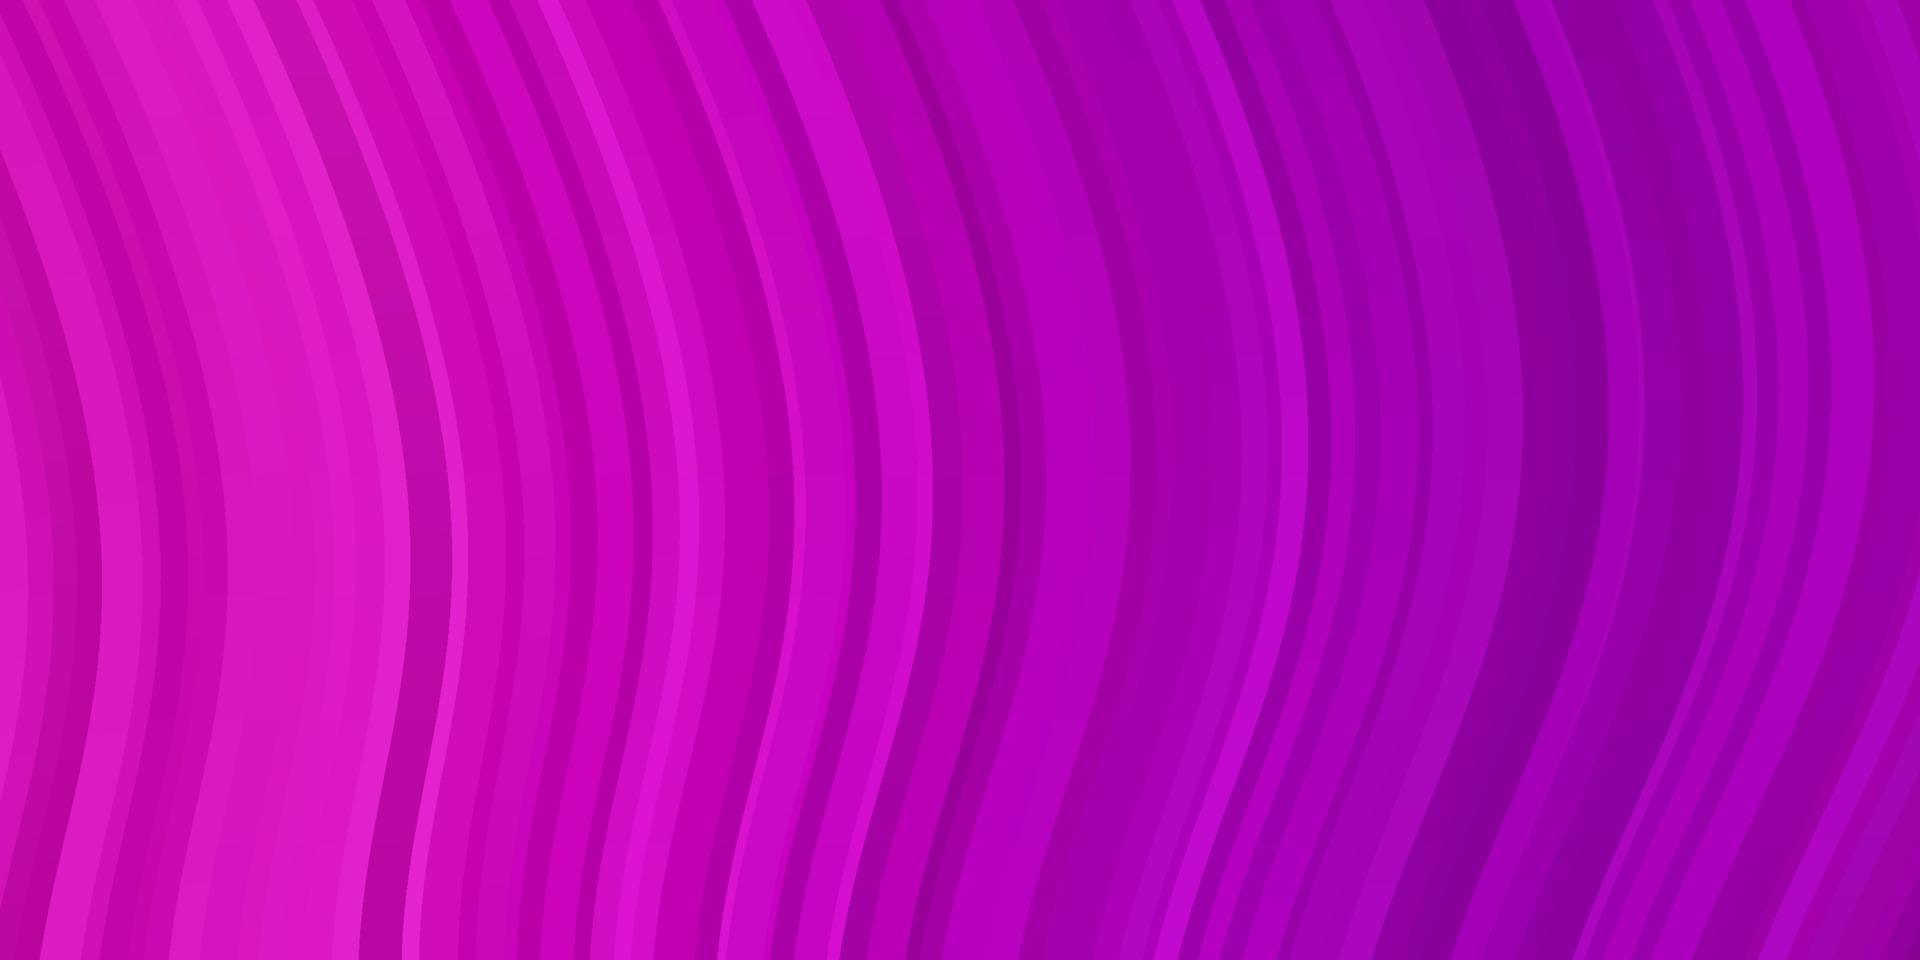 textura de vector rosa claro con curvas.